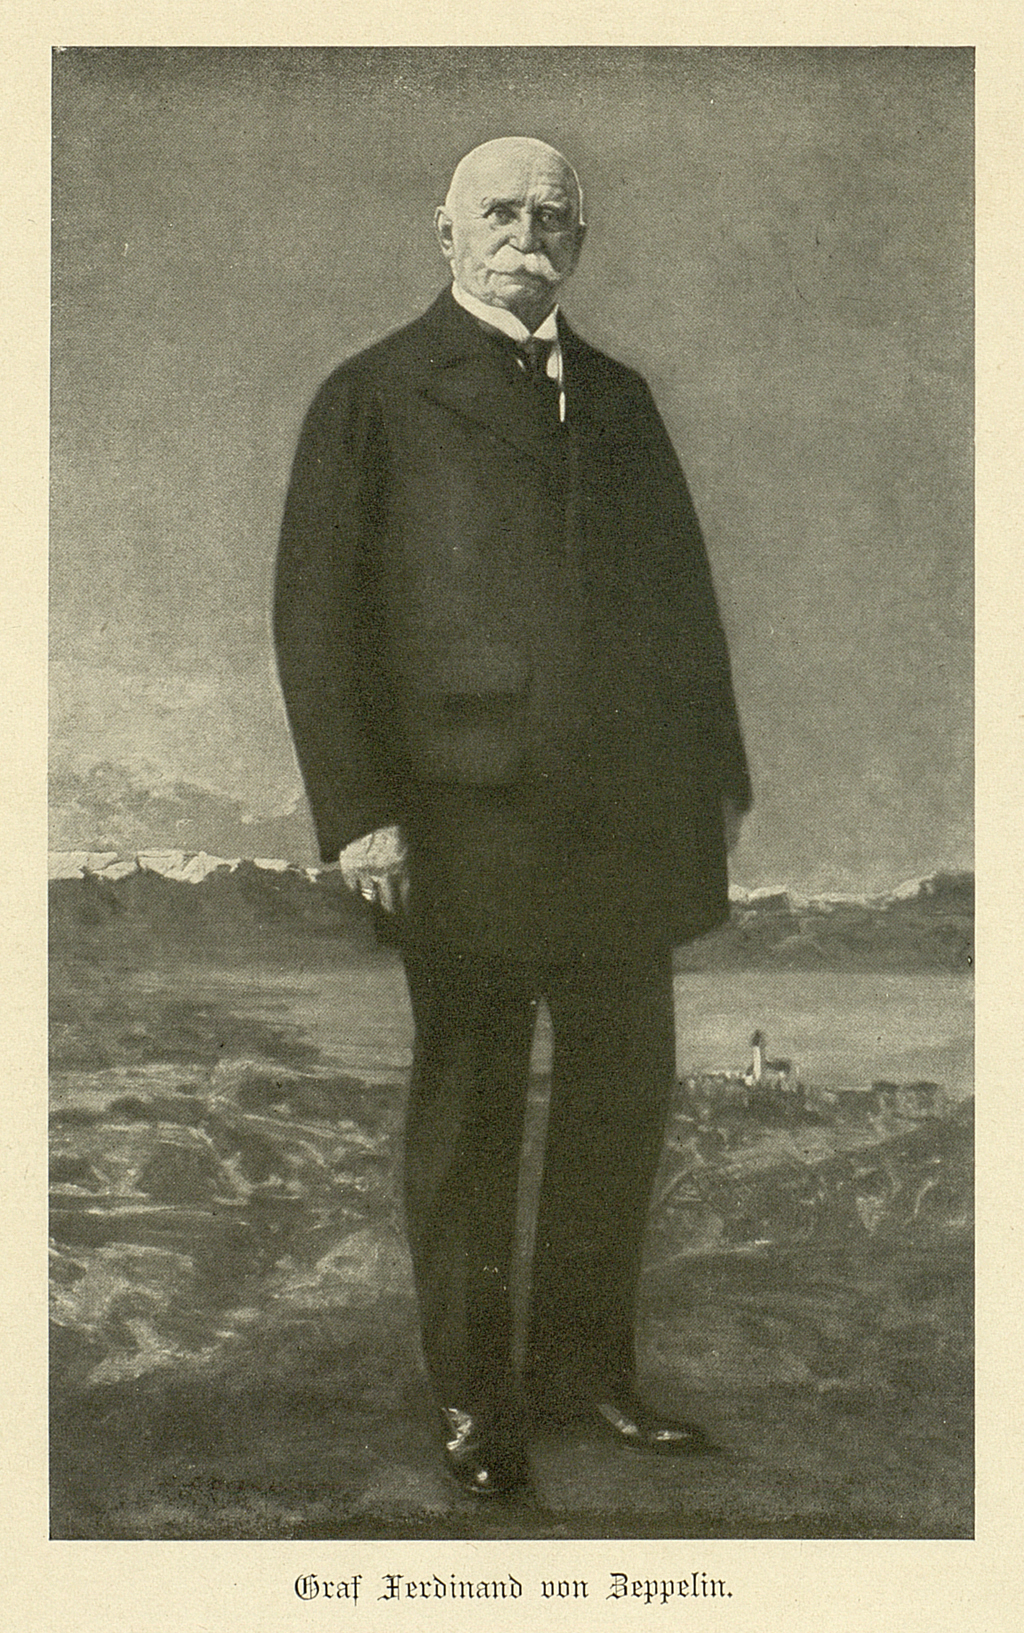 Die Ansichtskarte zeigt ein Ganzkörperportrait von Graf Ferdinand von Zeppelin als älteren Mann. Im Hintergrund lässt sich der Bodensee erkennen. 